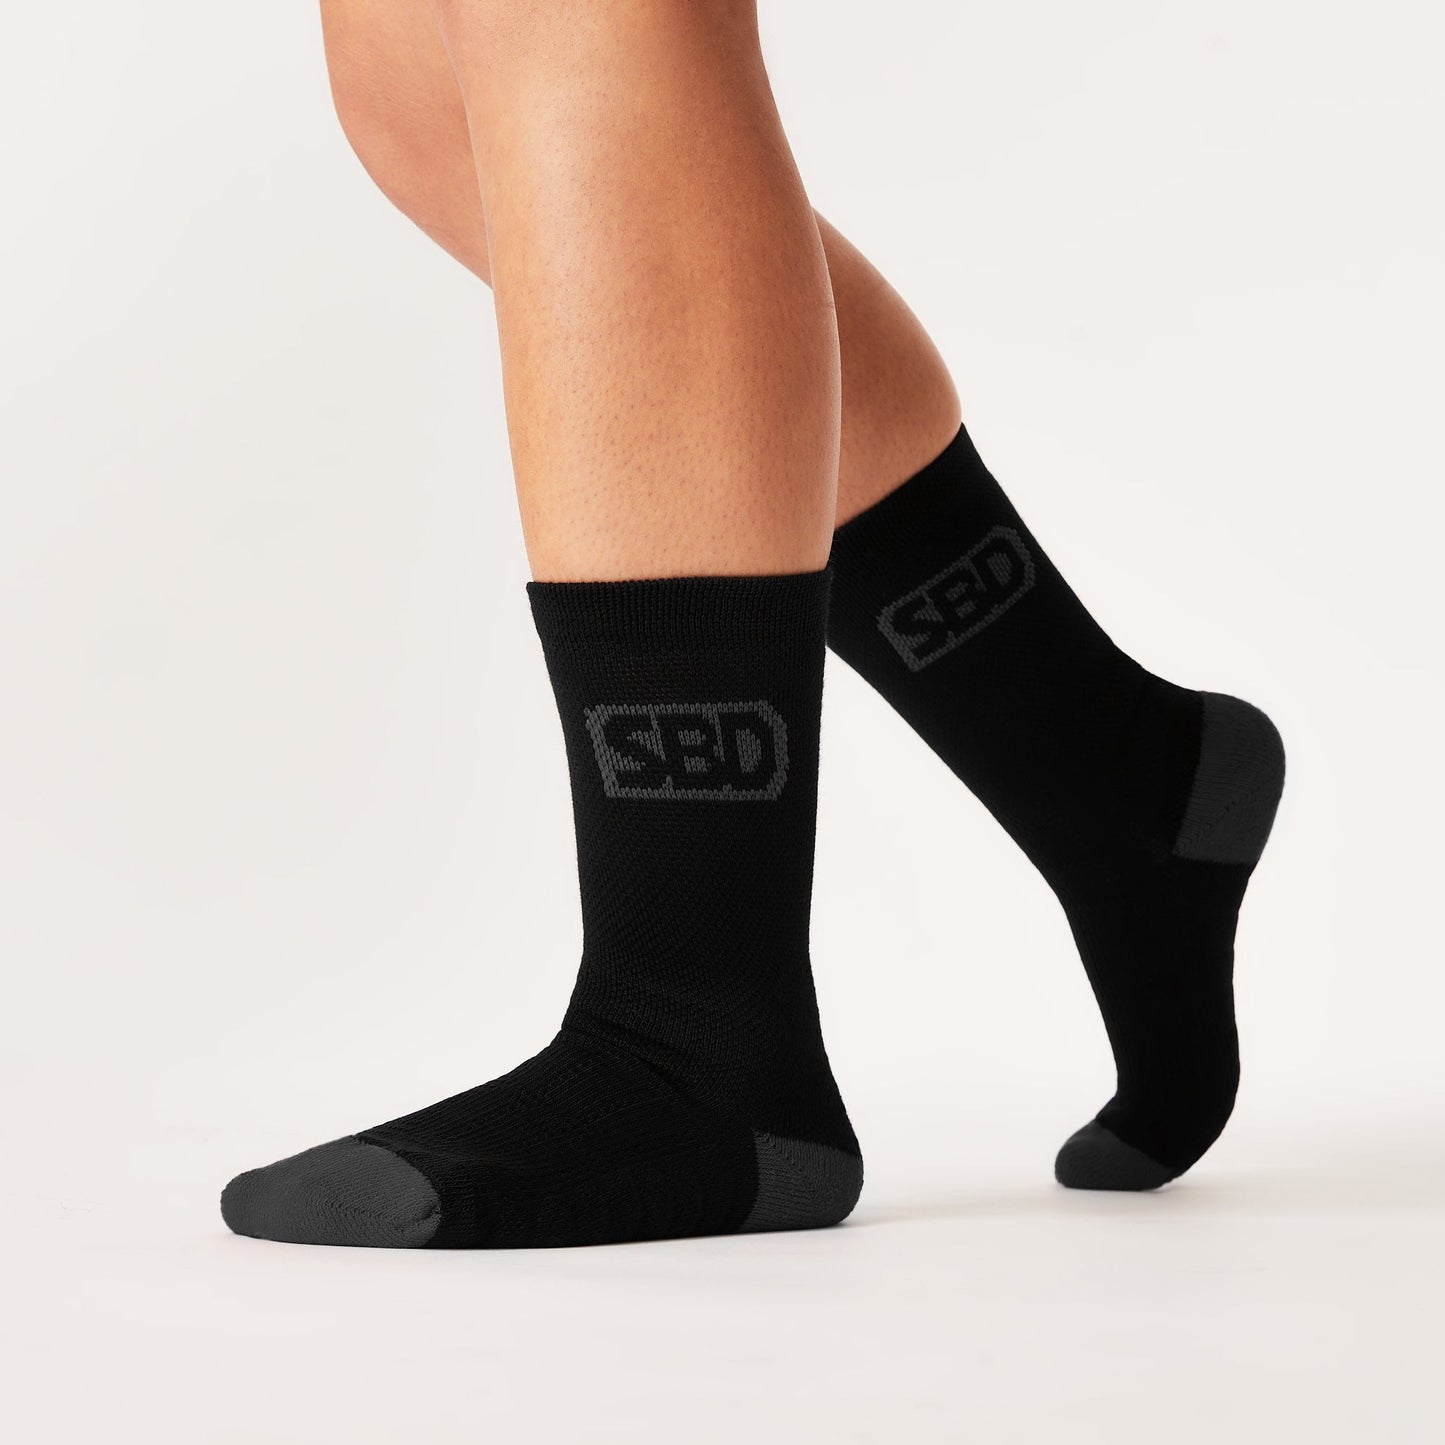 SBD Phantom Range Sports Socks